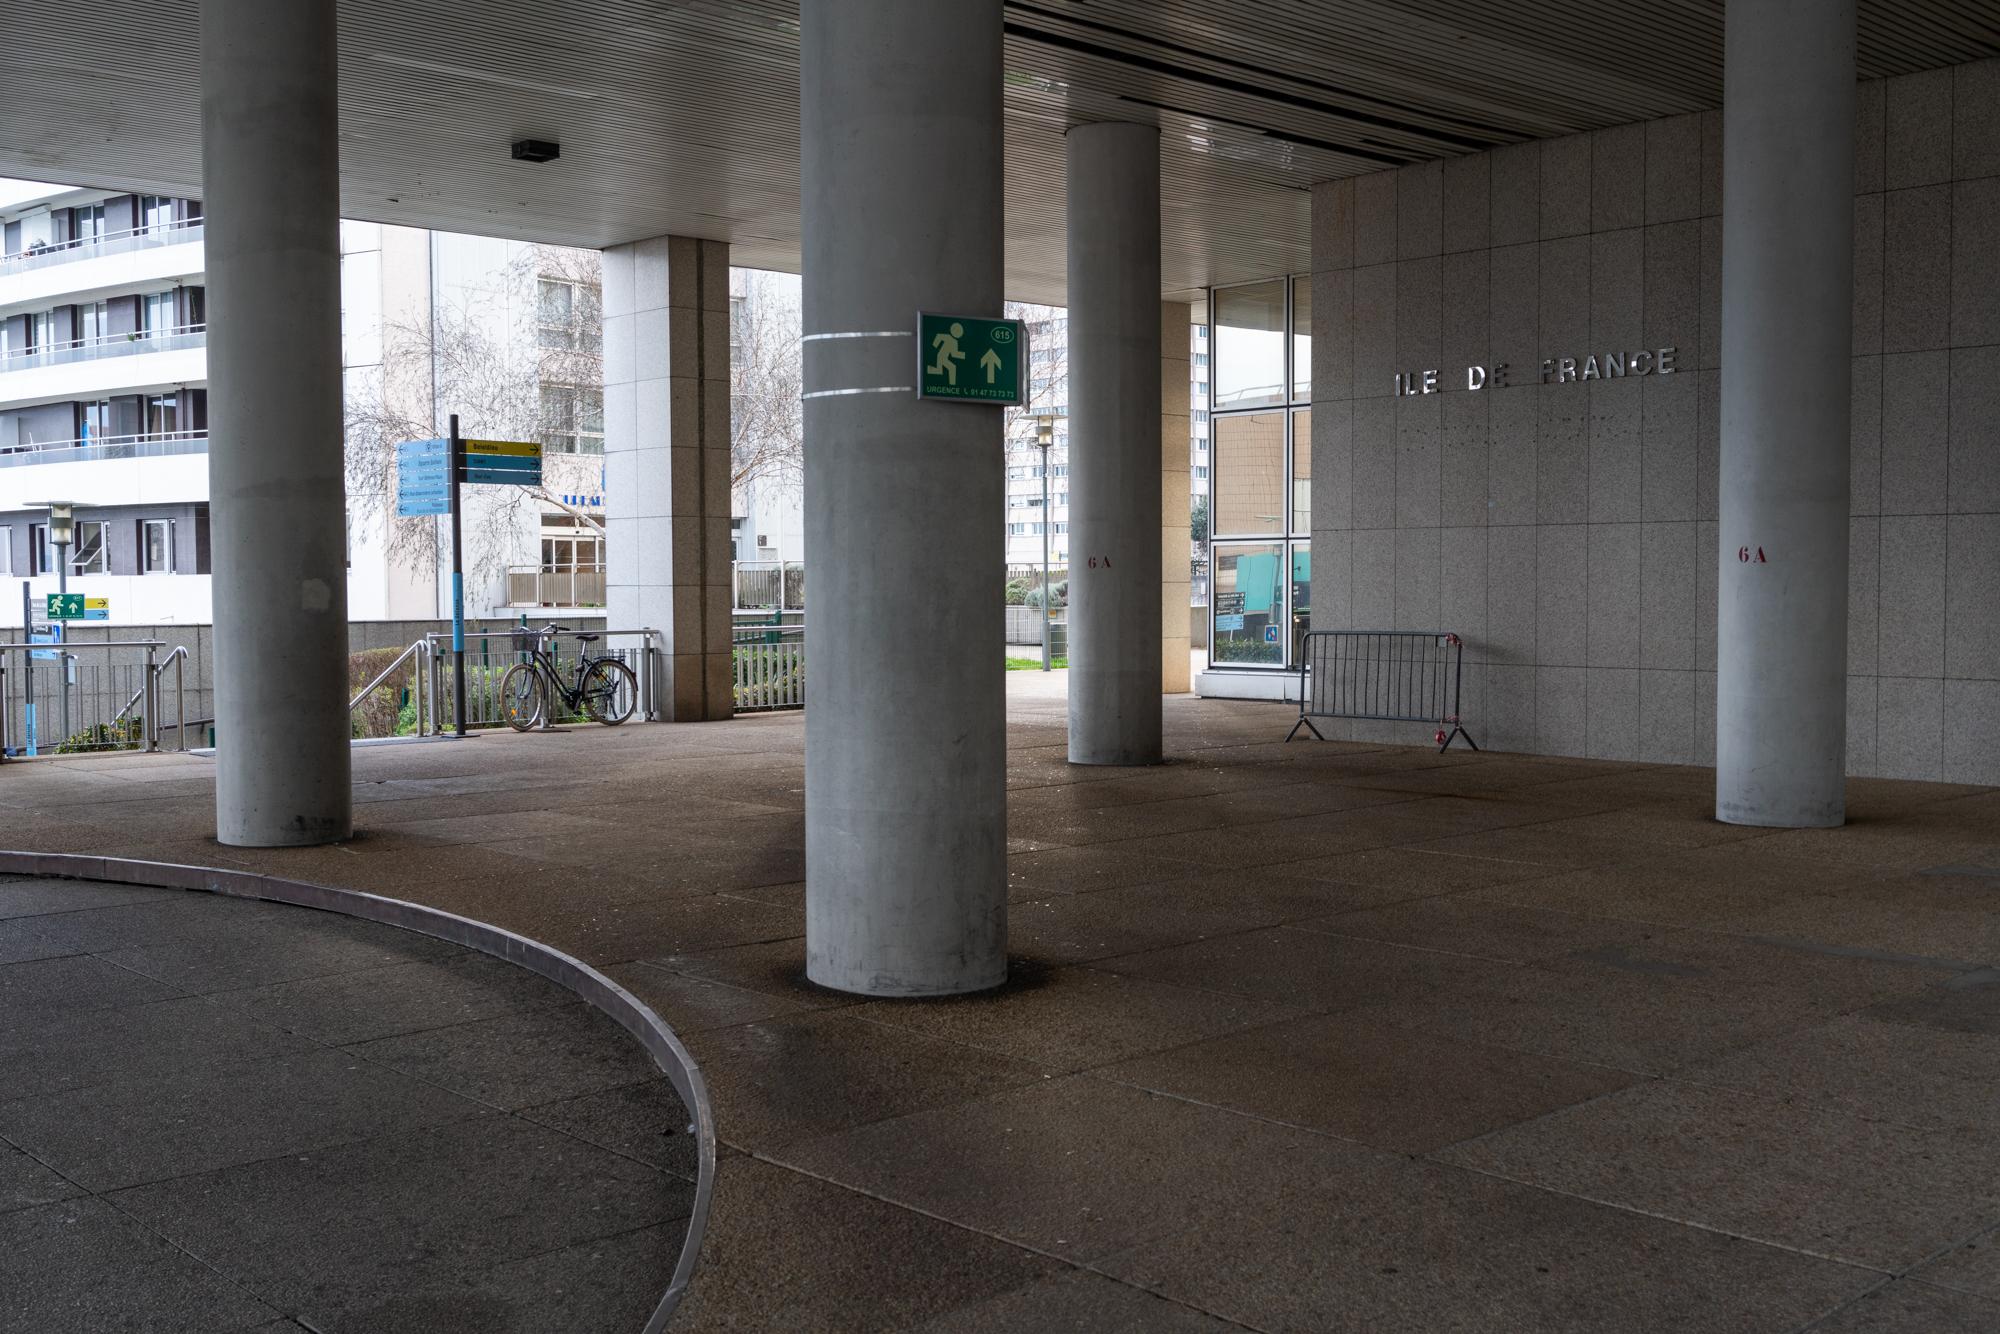 Parisian Scenes - La Défense, 2019.